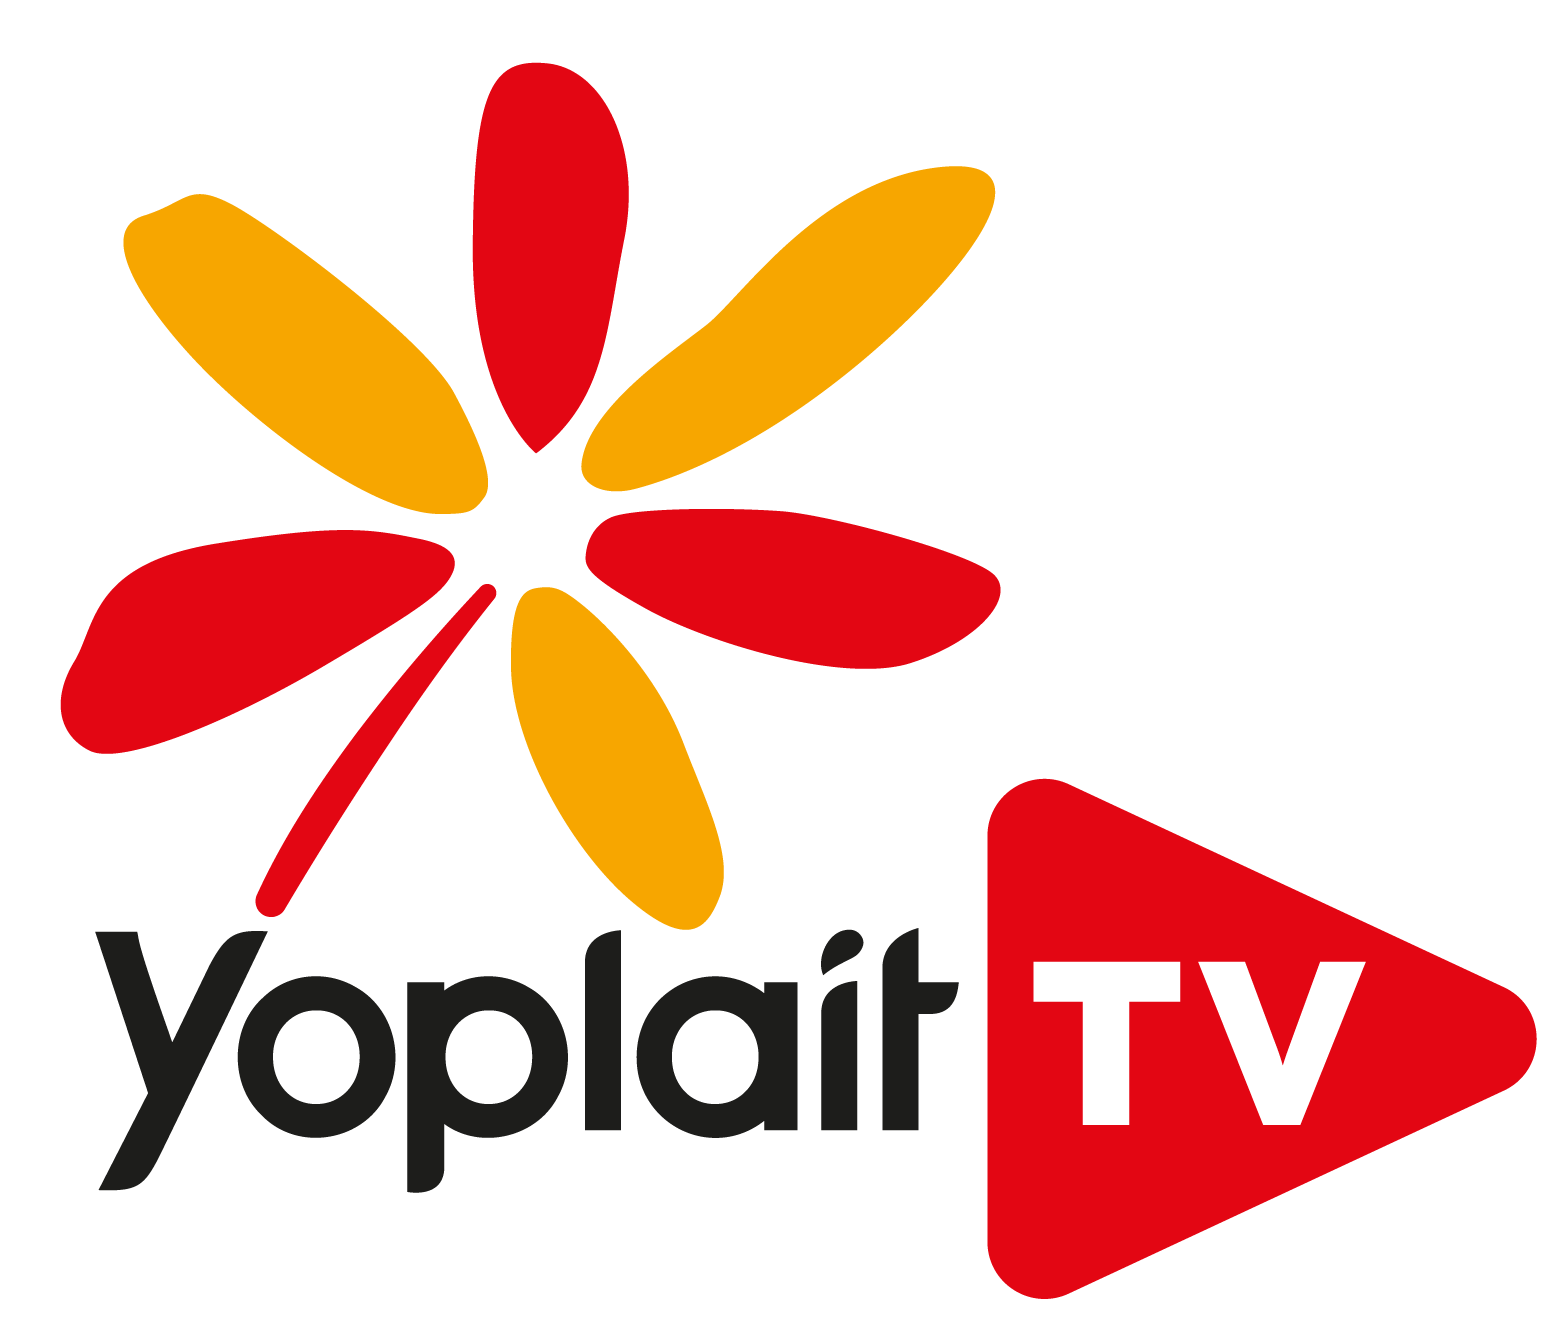 videas logo